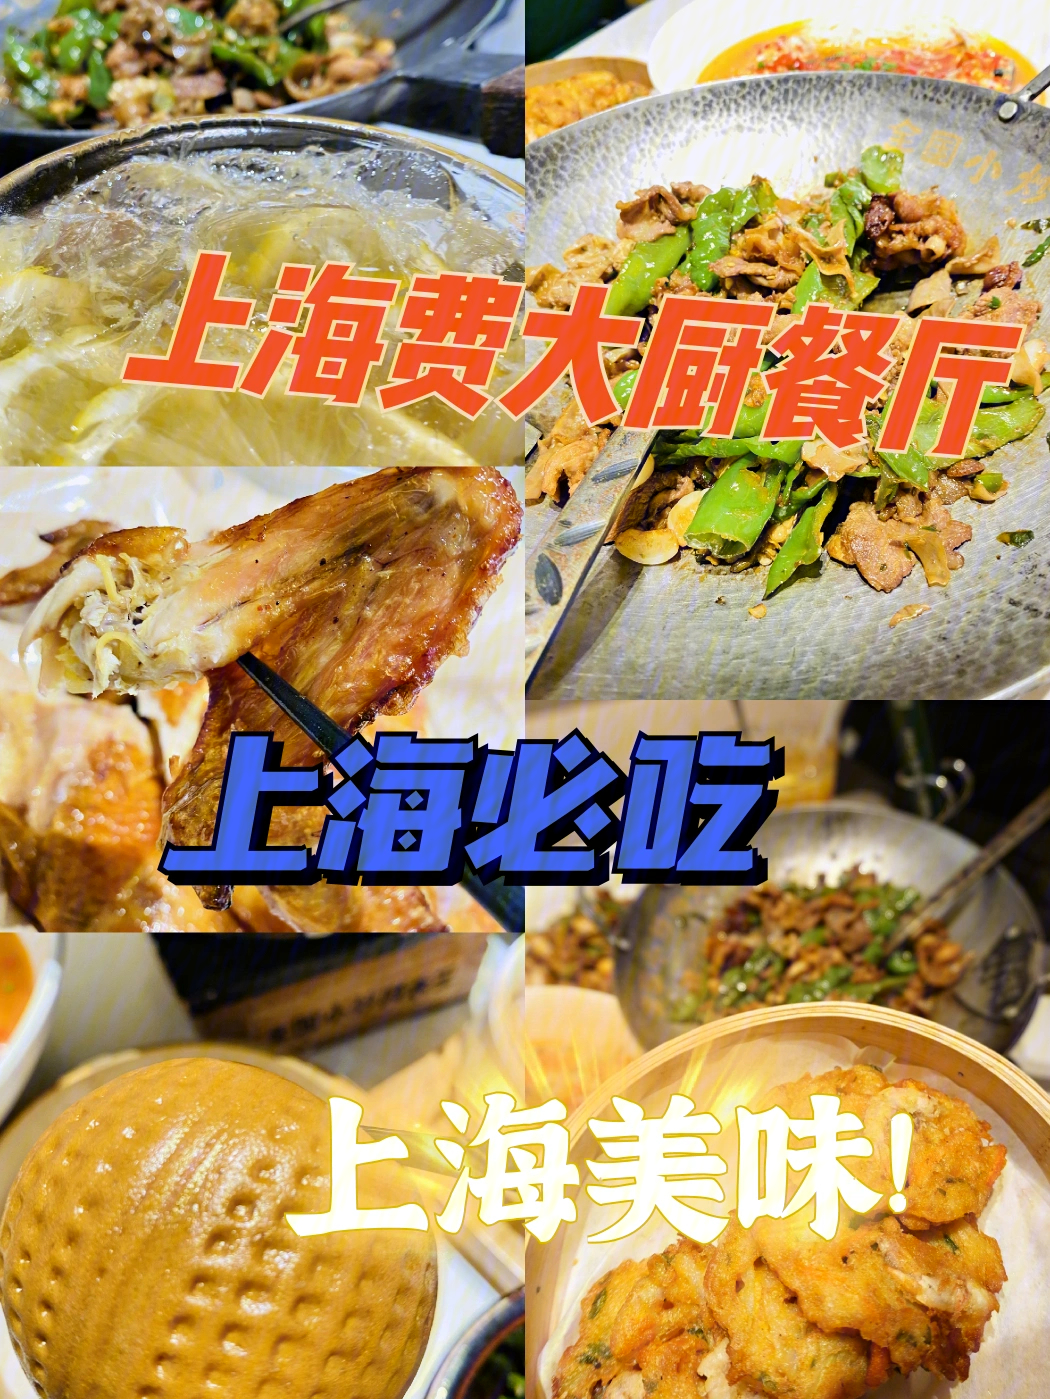 上海美食排行榜费大厨稳居第一名